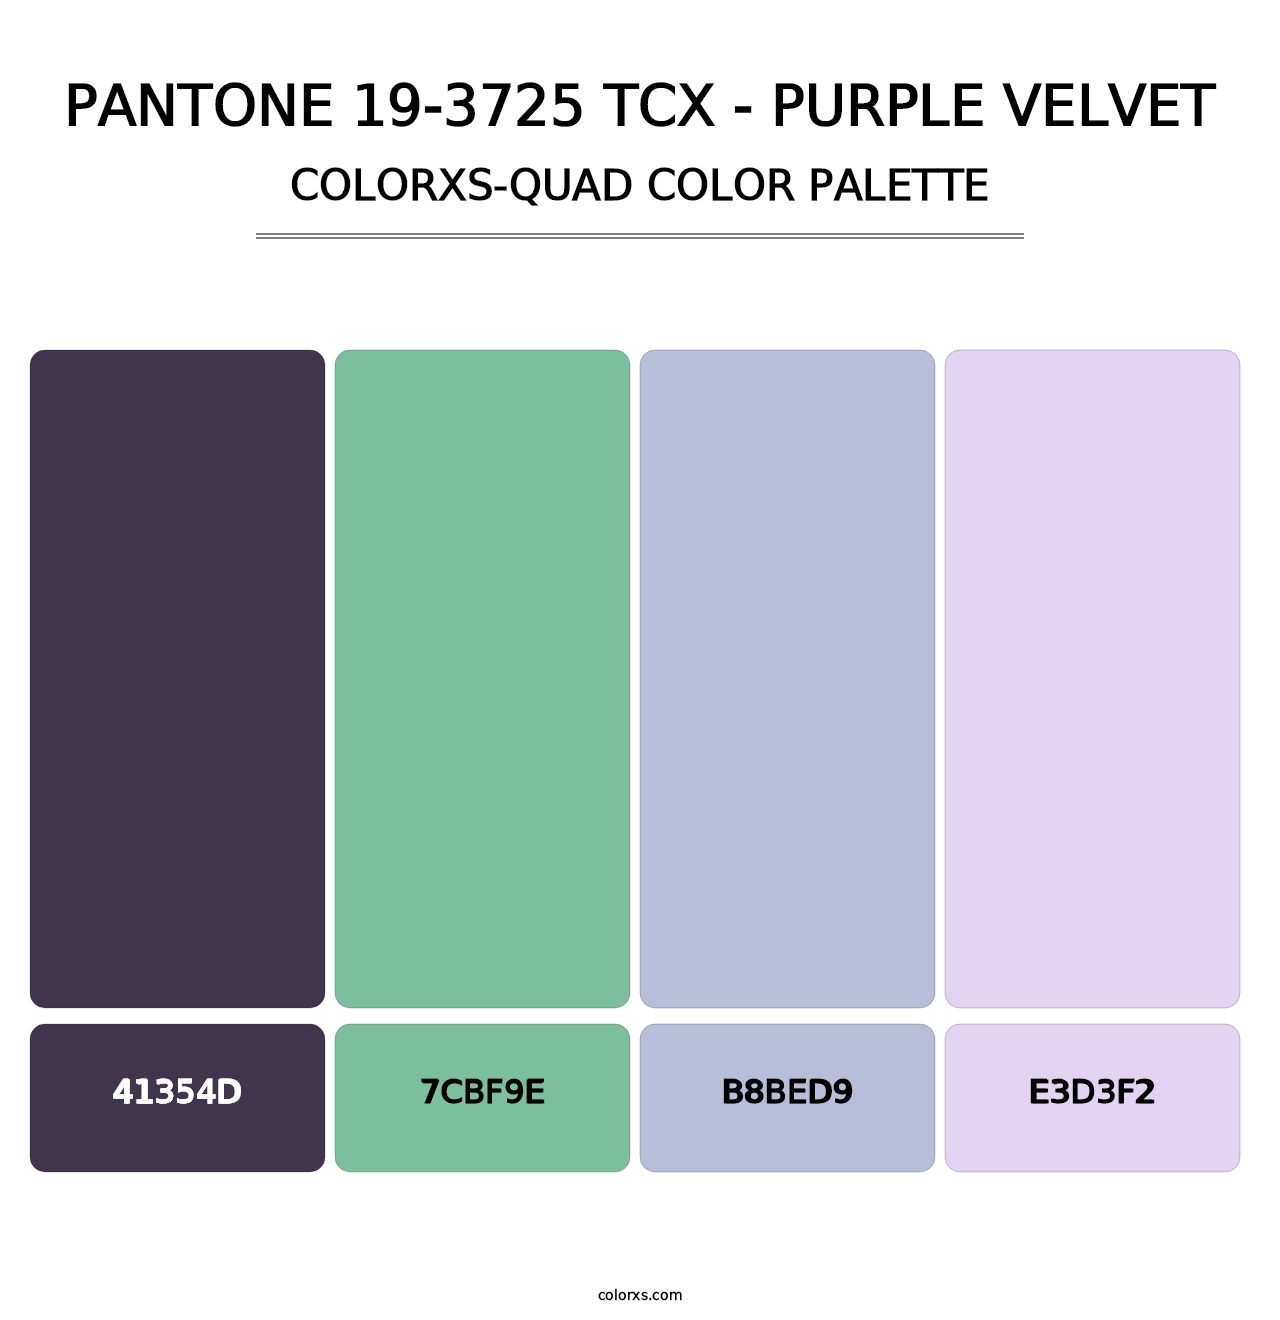 PANTONE 19-3725 TCX - Purple Velvet - Colorxs Quad Palette